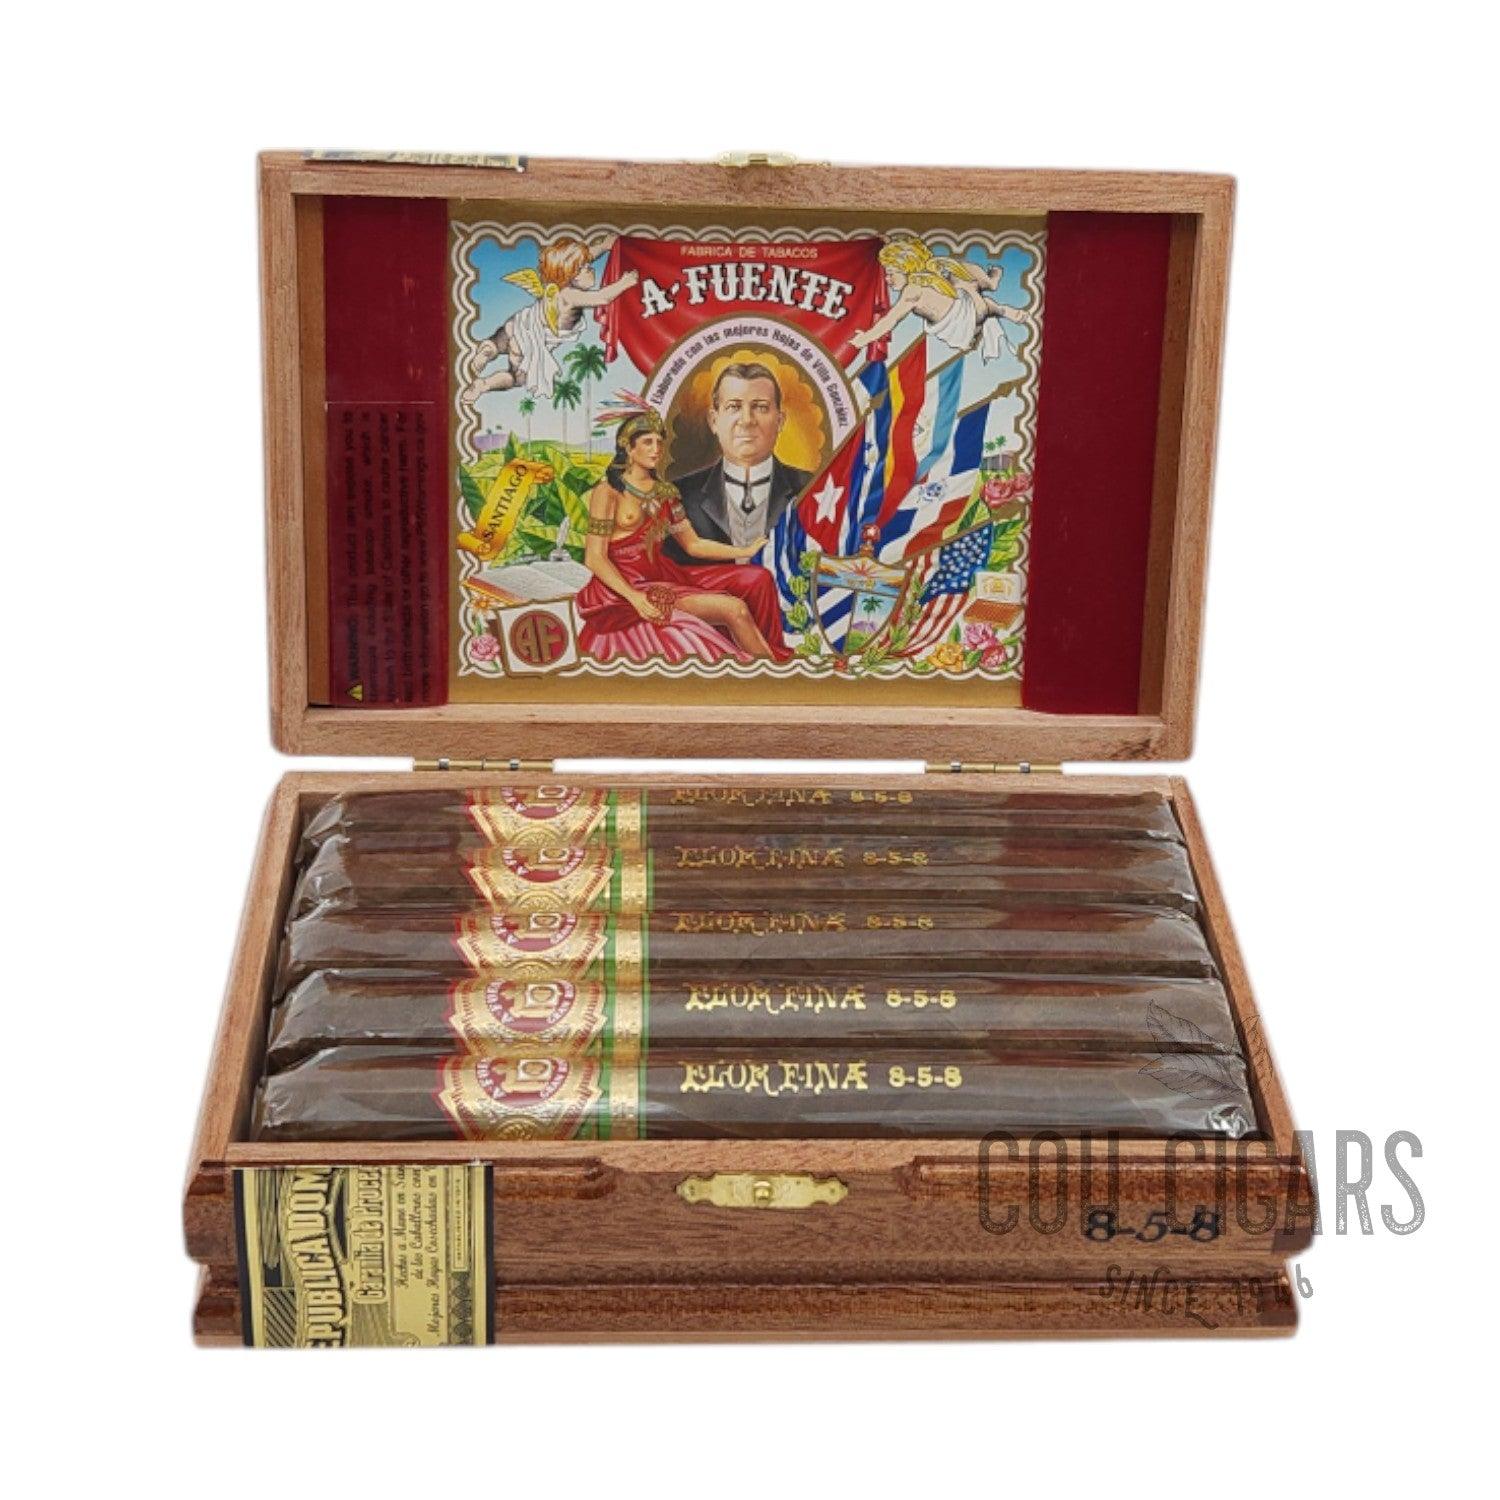 Arturo Fuente Cigar | 8-5-8 | Box 10 - hk.cohcigars